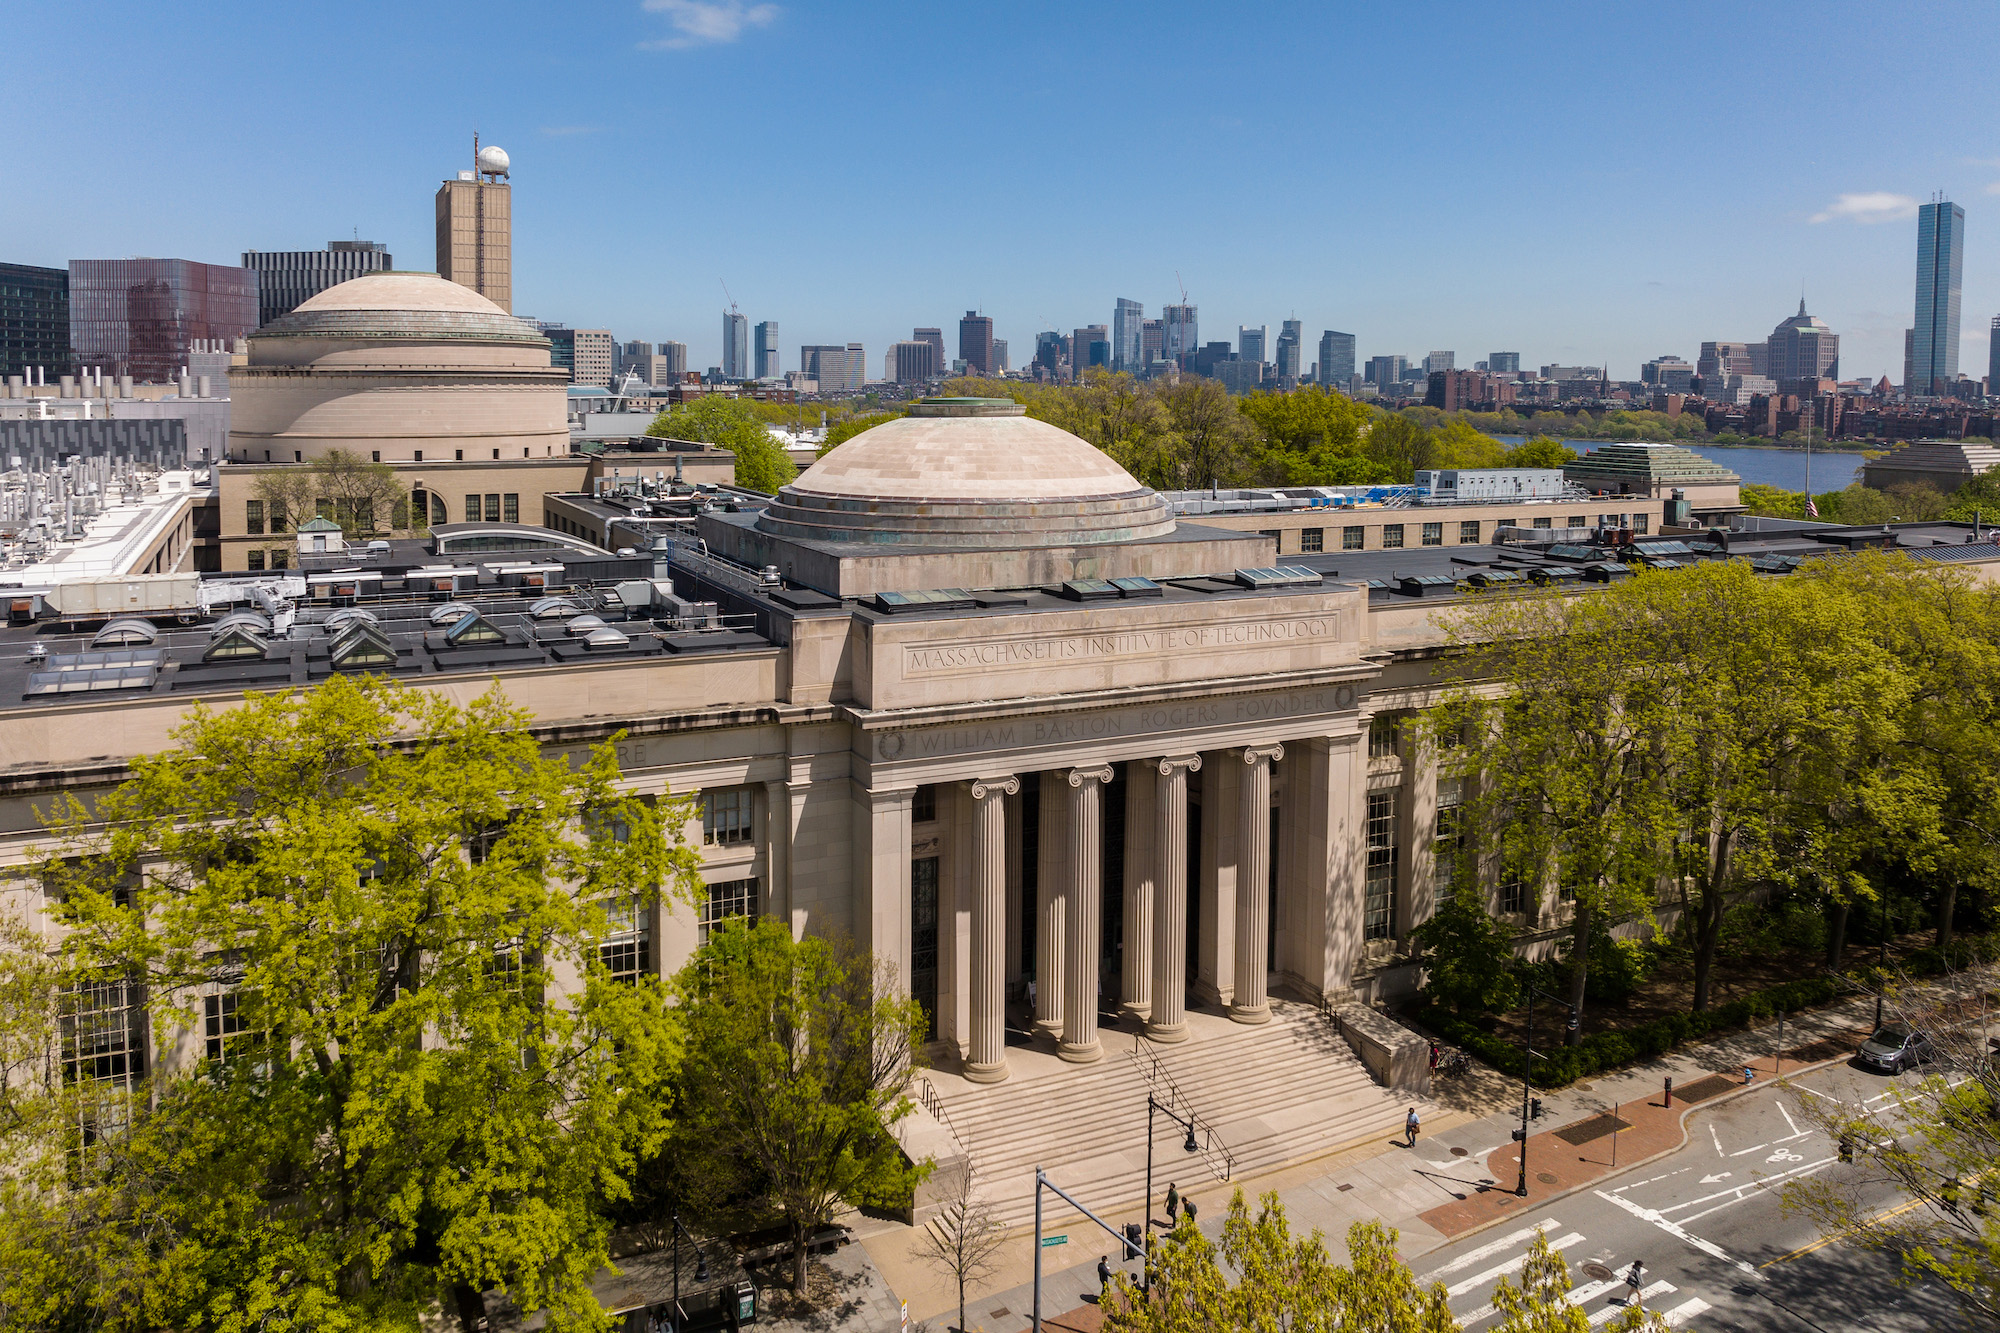  Massachusetts Institute of Technology (MIT)